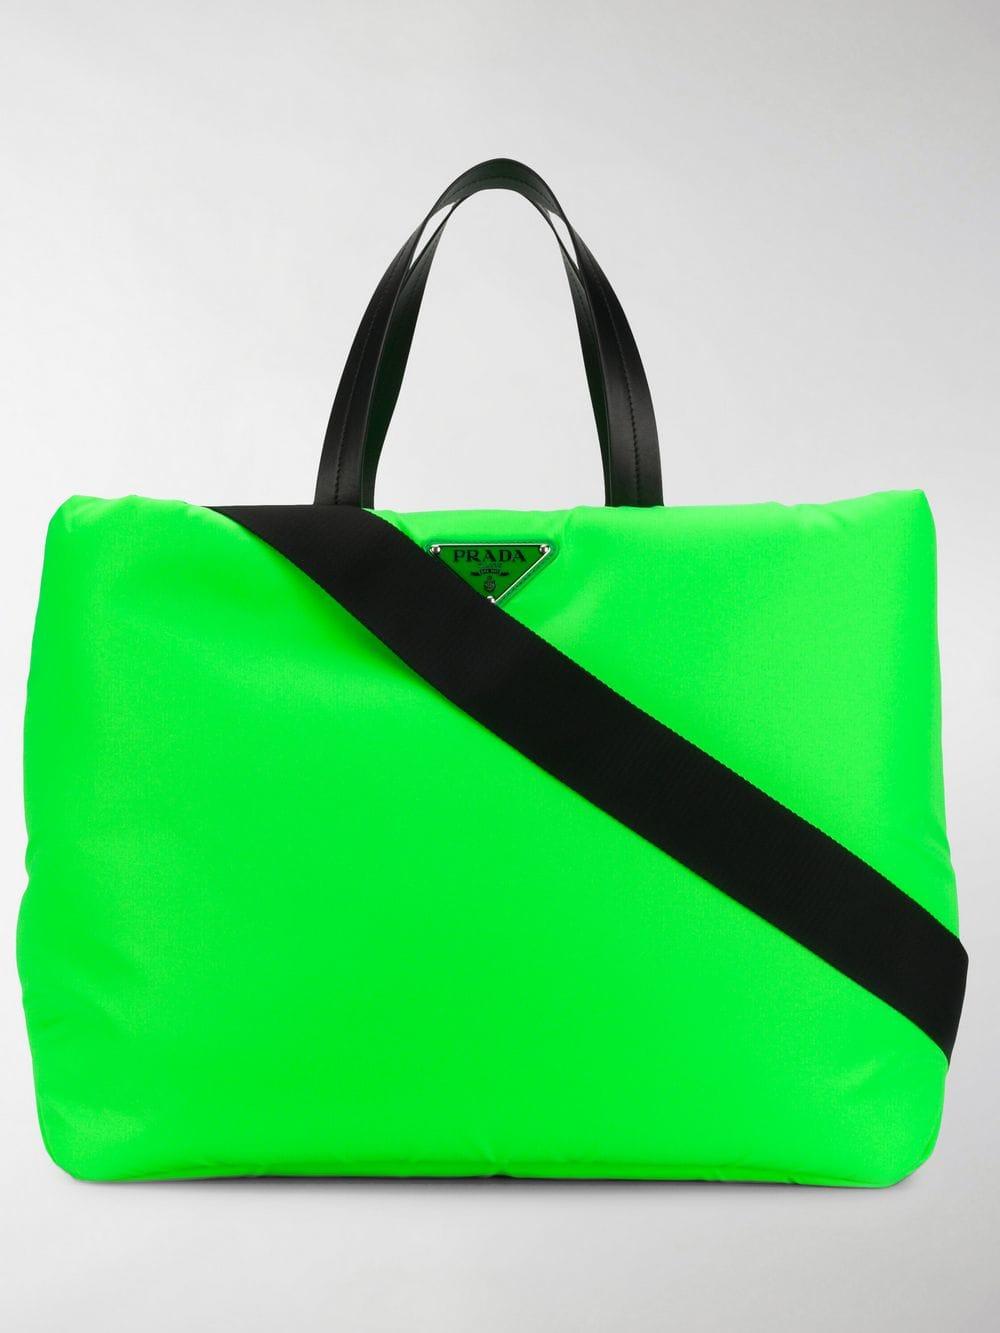 Arriba 63+ imagen neon green prada bag - Abzlocal.mx